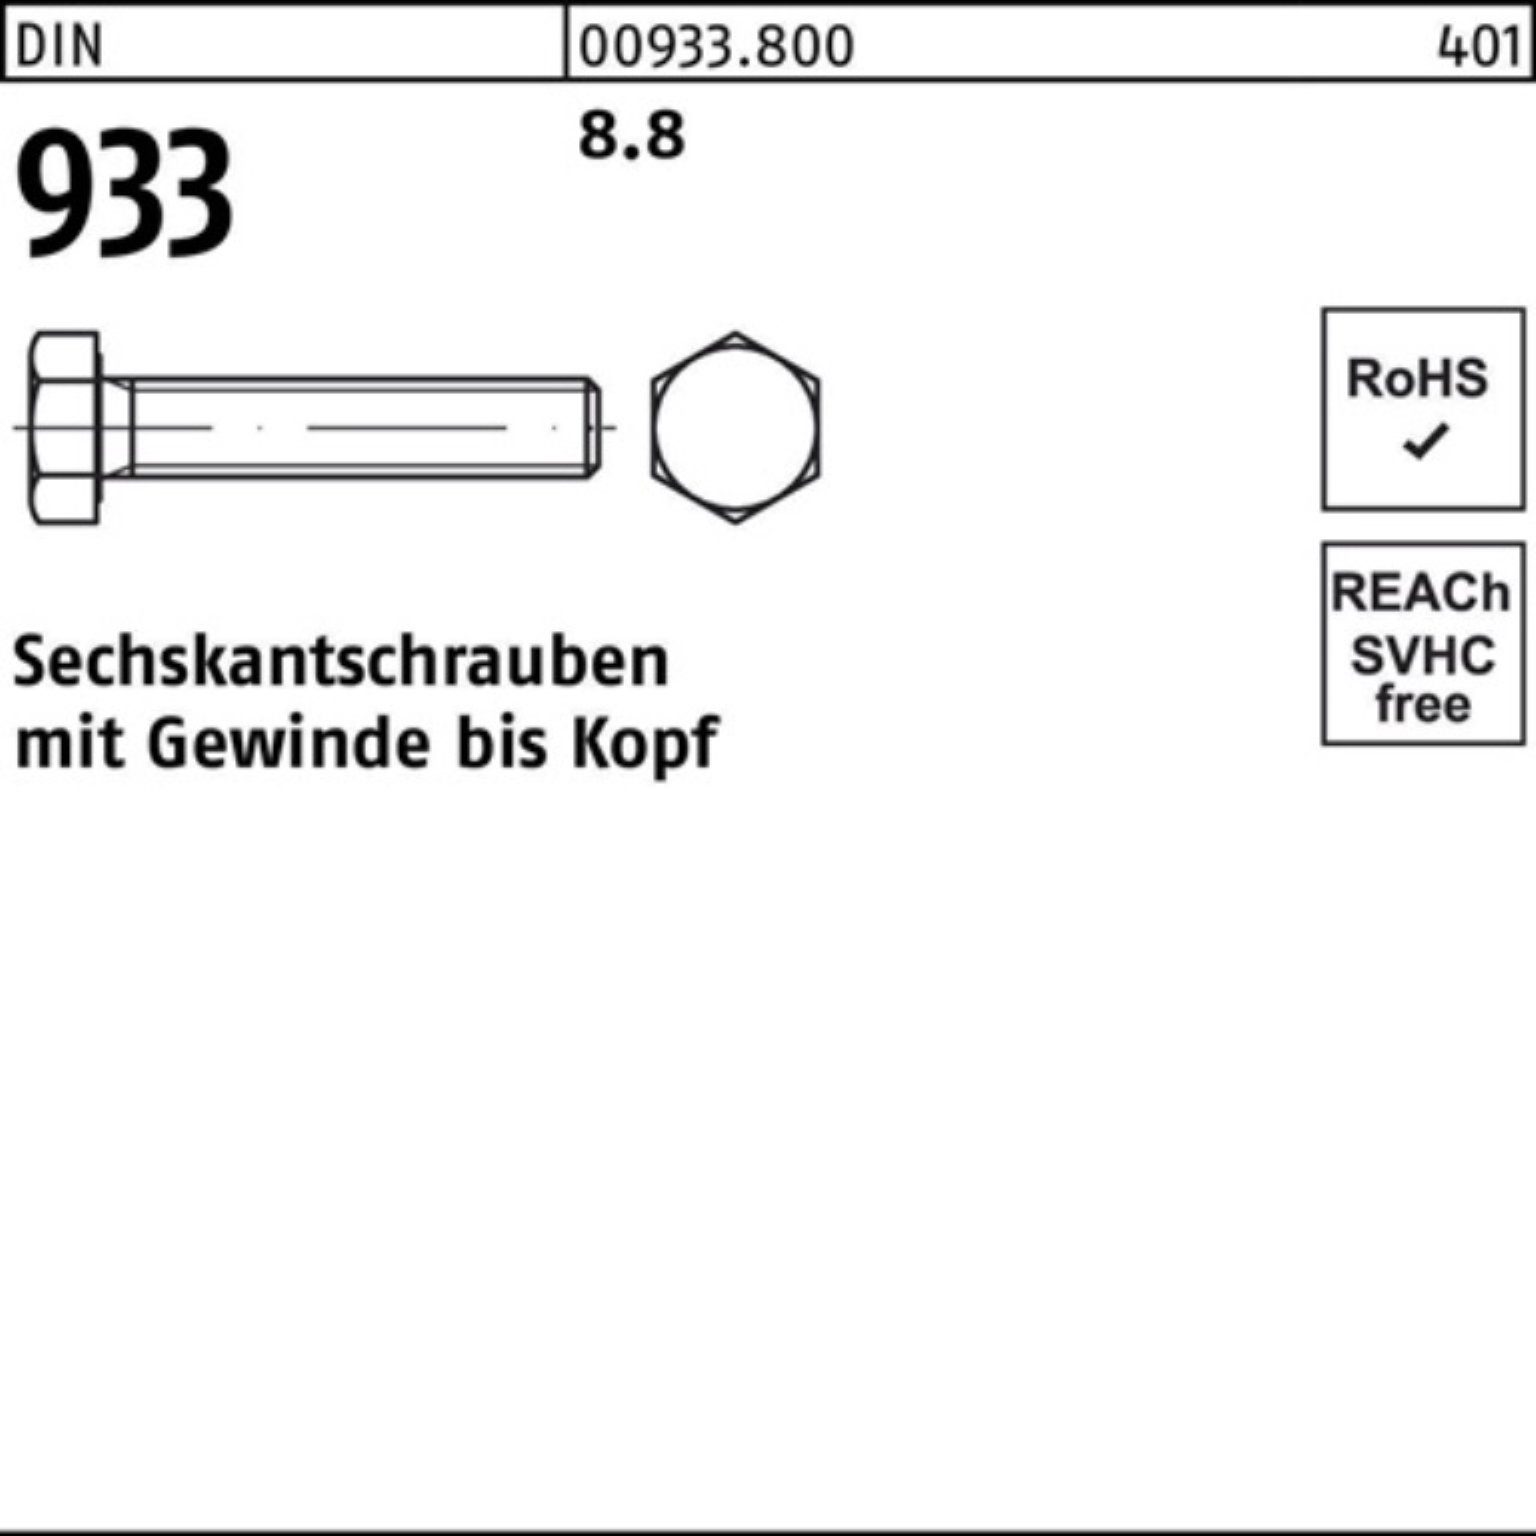 Reyher Sechskantschraube 100er 933 25 M18x Stück 933 Pack Sechskantschraube DIN VG 150 8.8 DIN